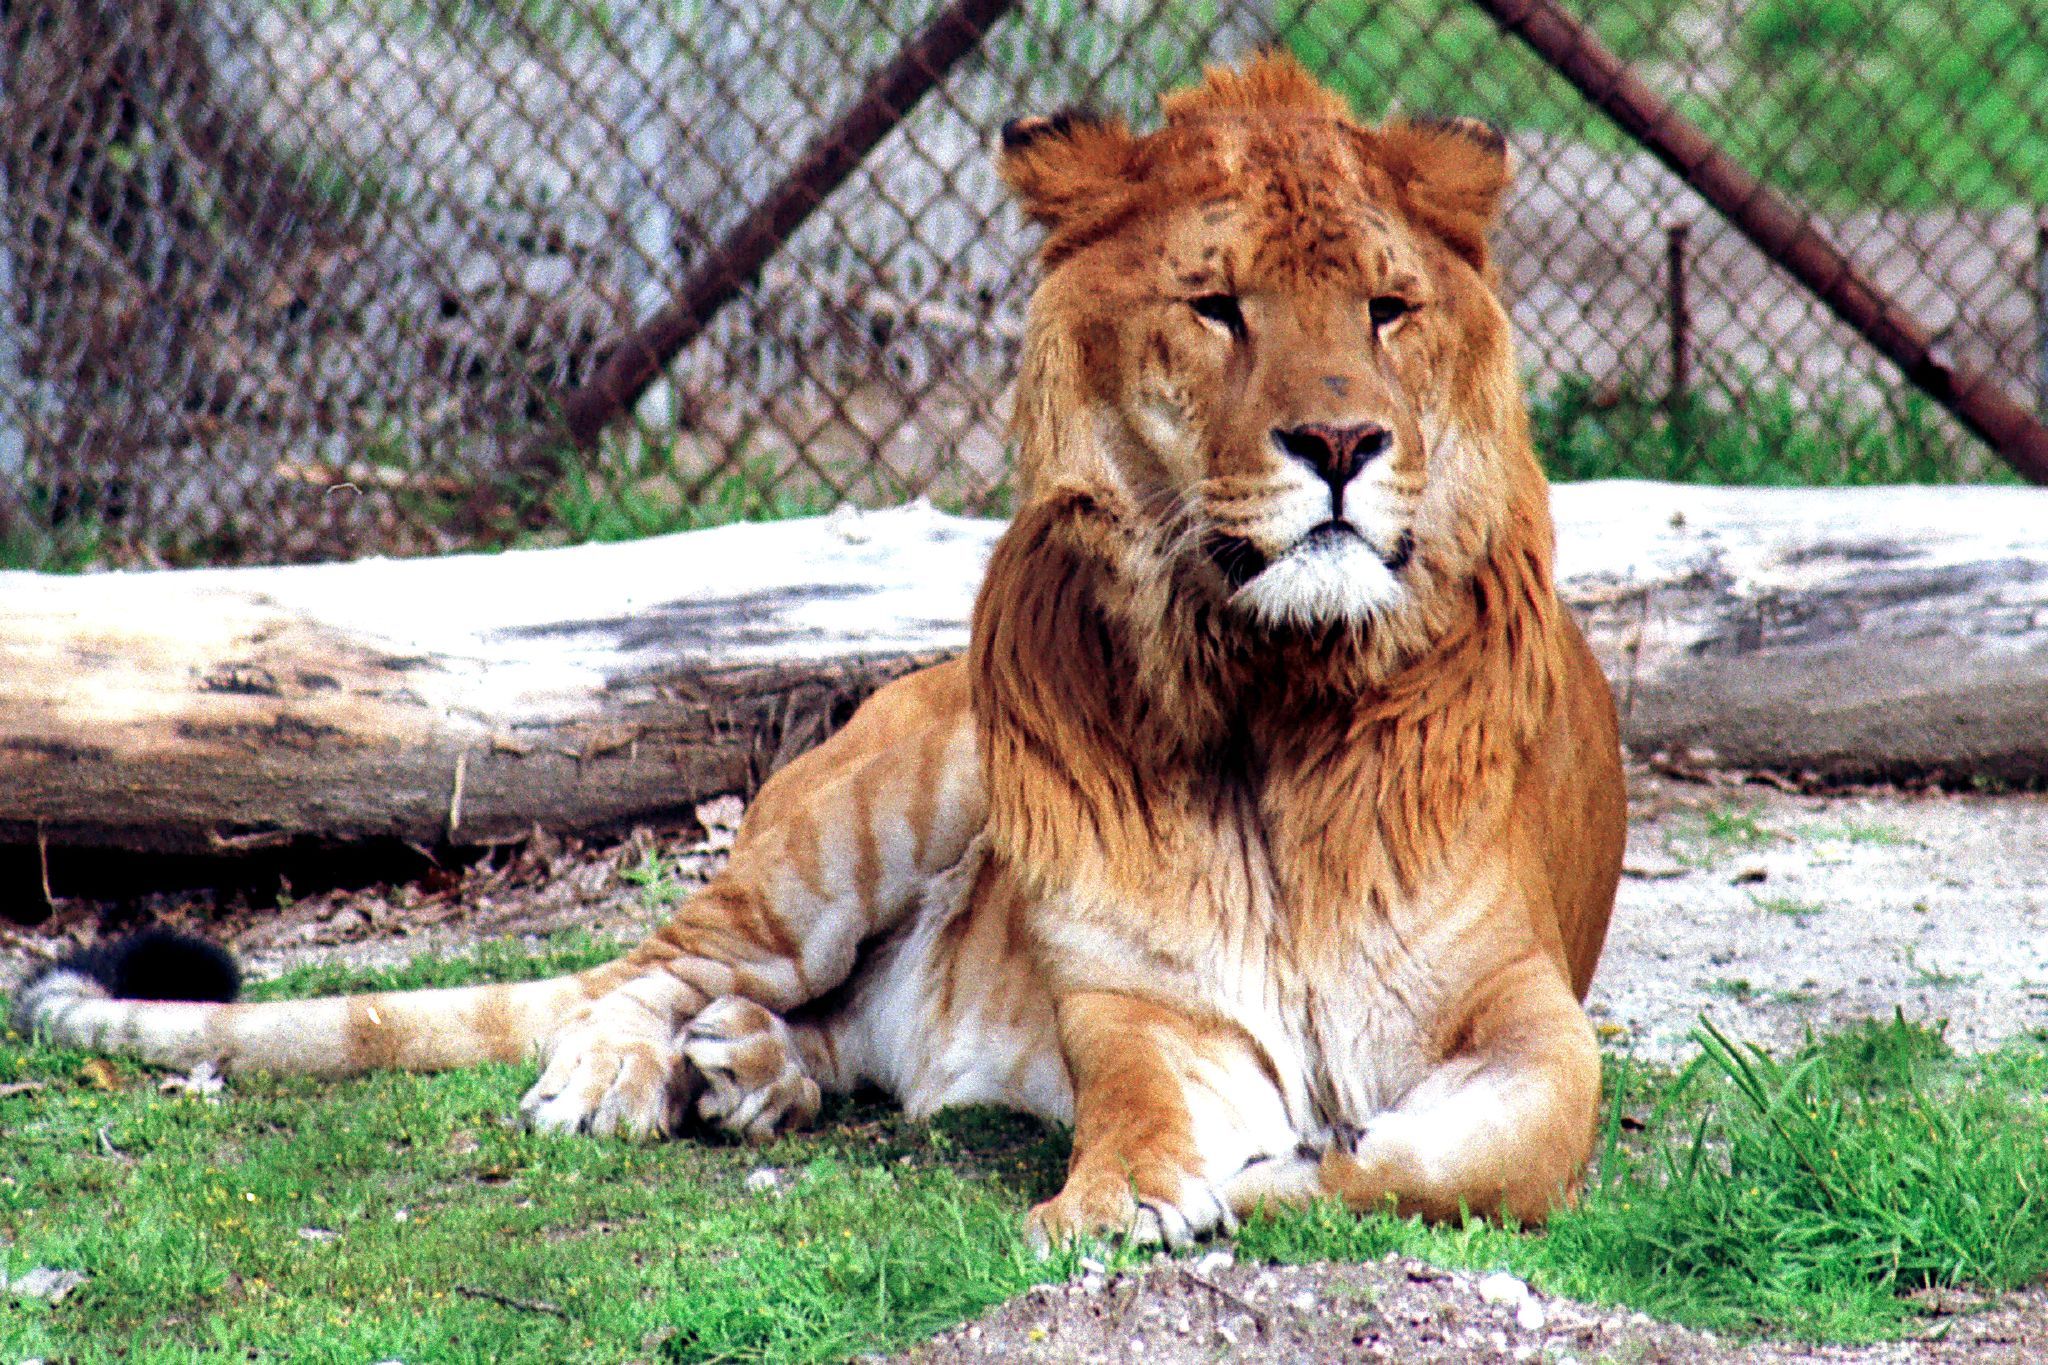 狮虎兽和虎狮兽数量比老虎还少,为何不属于国家一级保护动物?